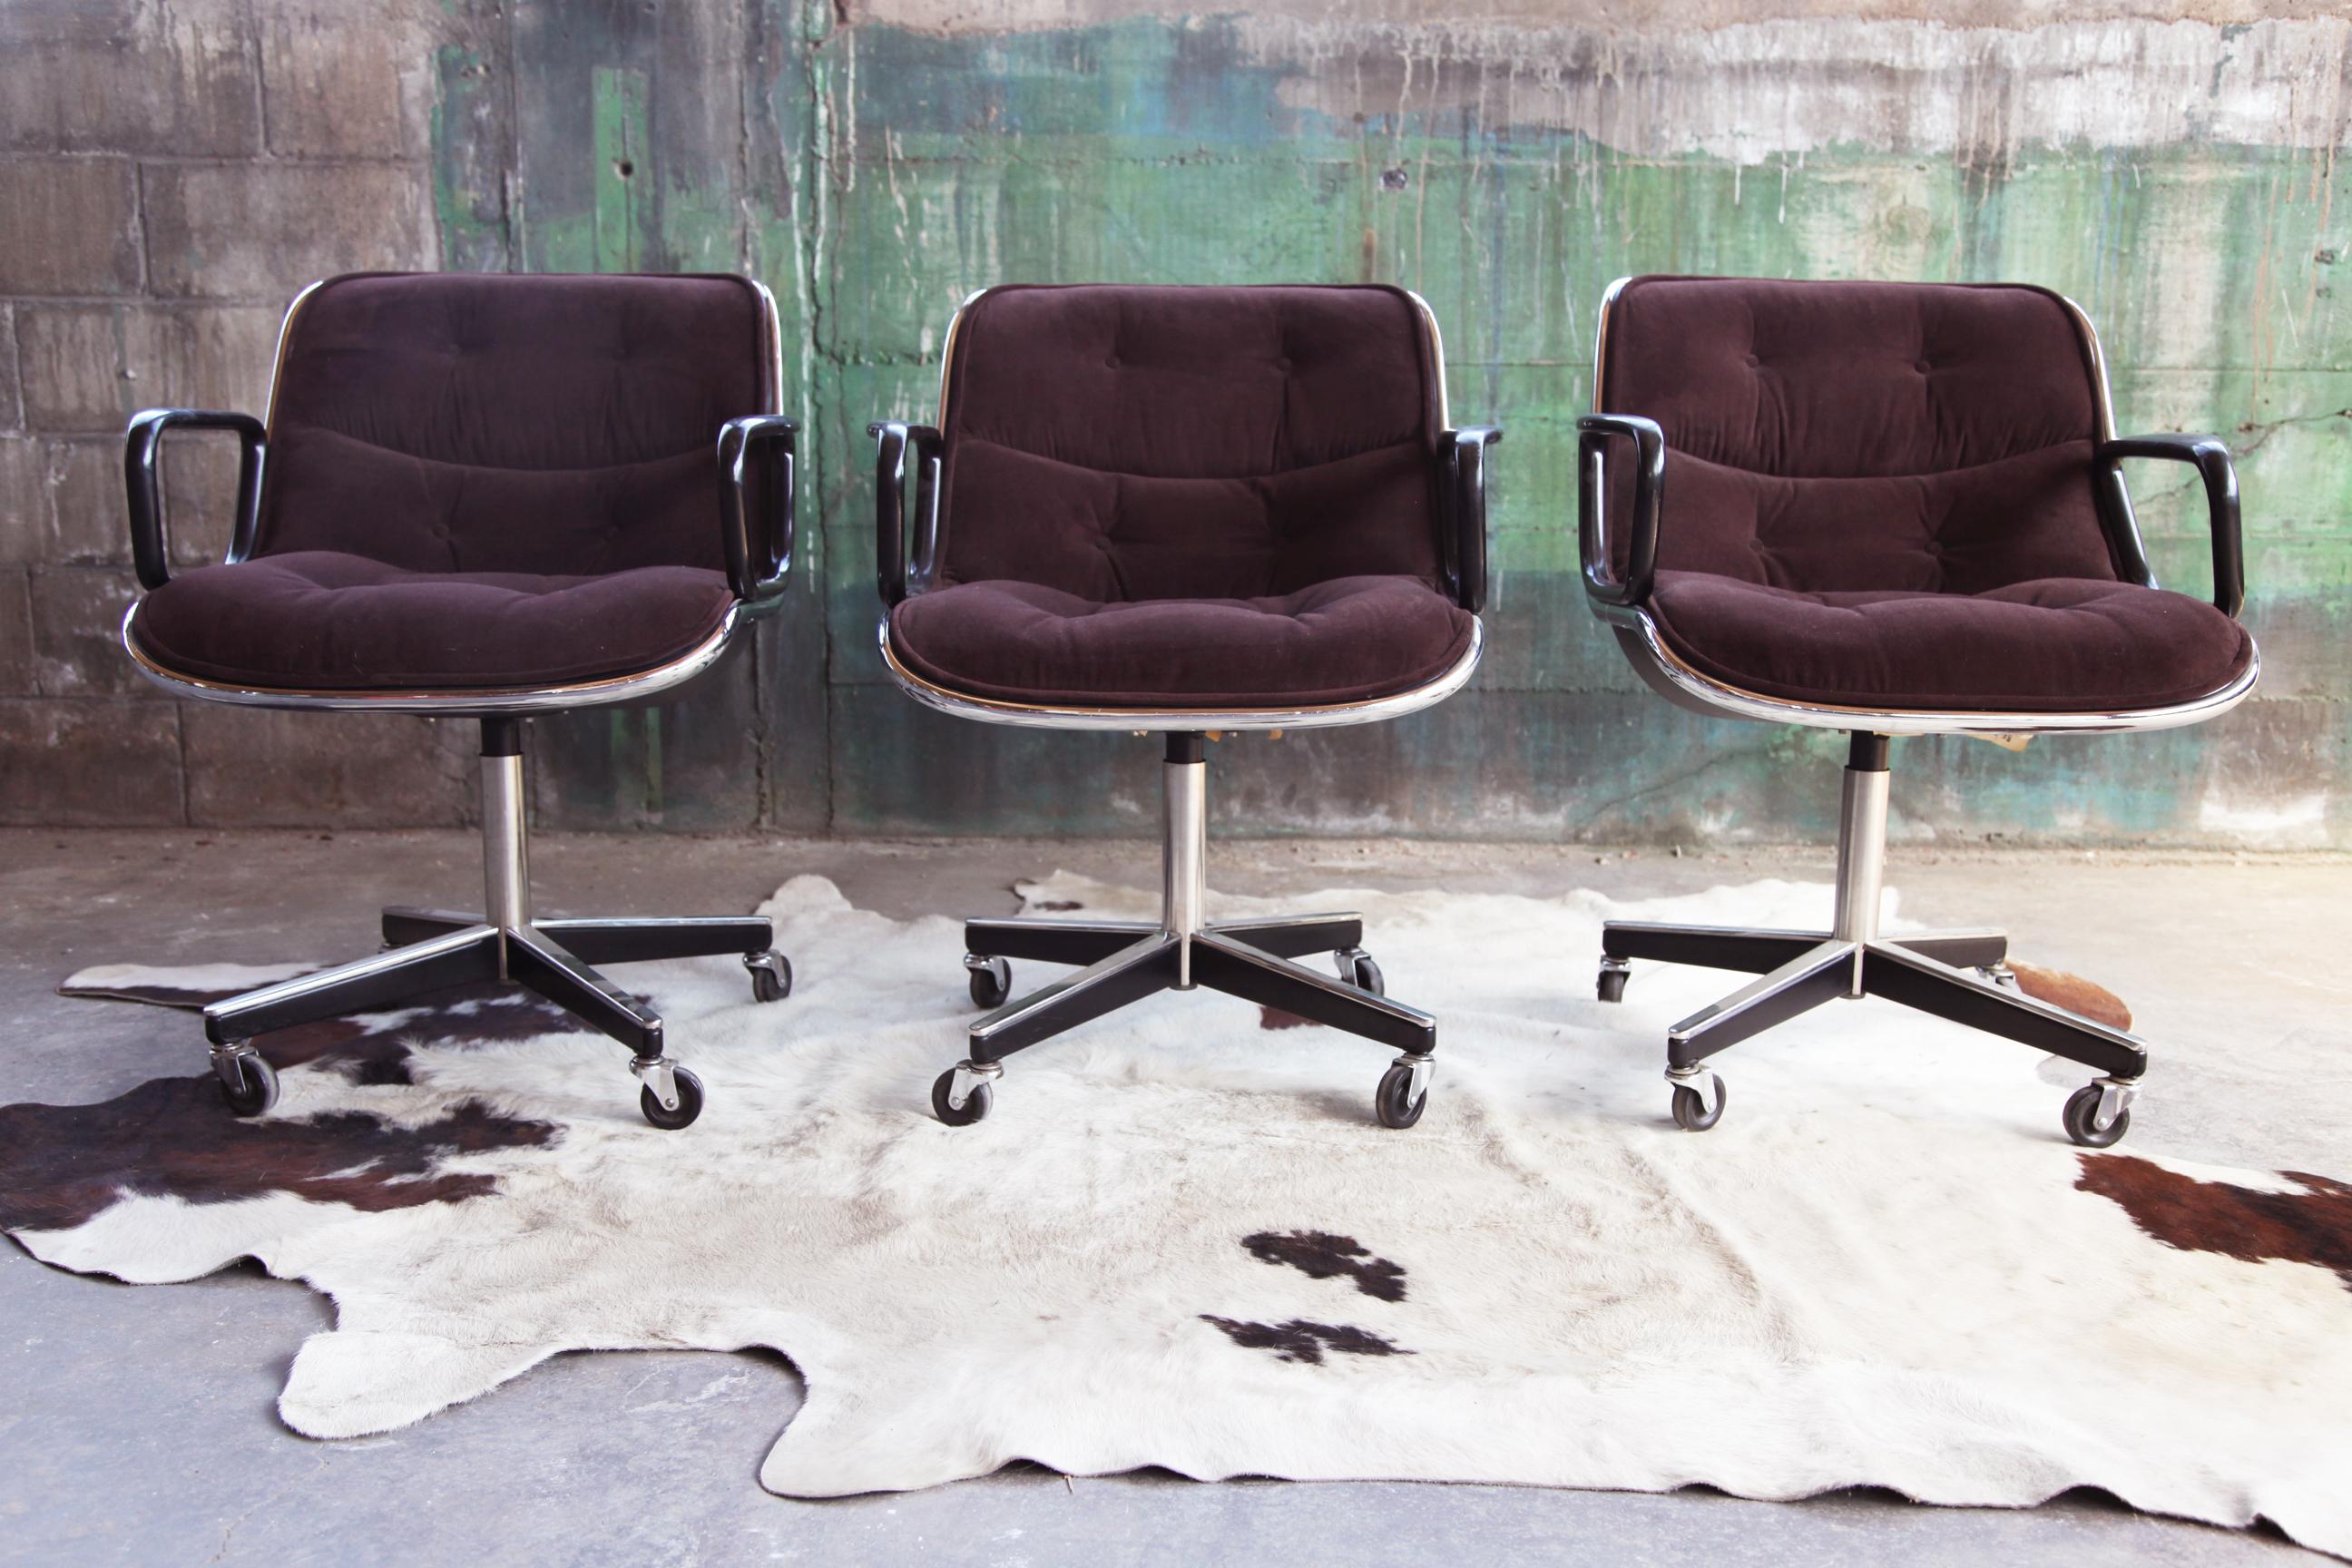 Deux disponibles, vendus séparément - original 4 pieds (recherché !!) brun et chrome Mid Century Vintage Knoll Pollock chaise - rare beauté - de l'époque de l'apogée de la création à la fois étonnamment grand design ainsi que des chaises de bureau